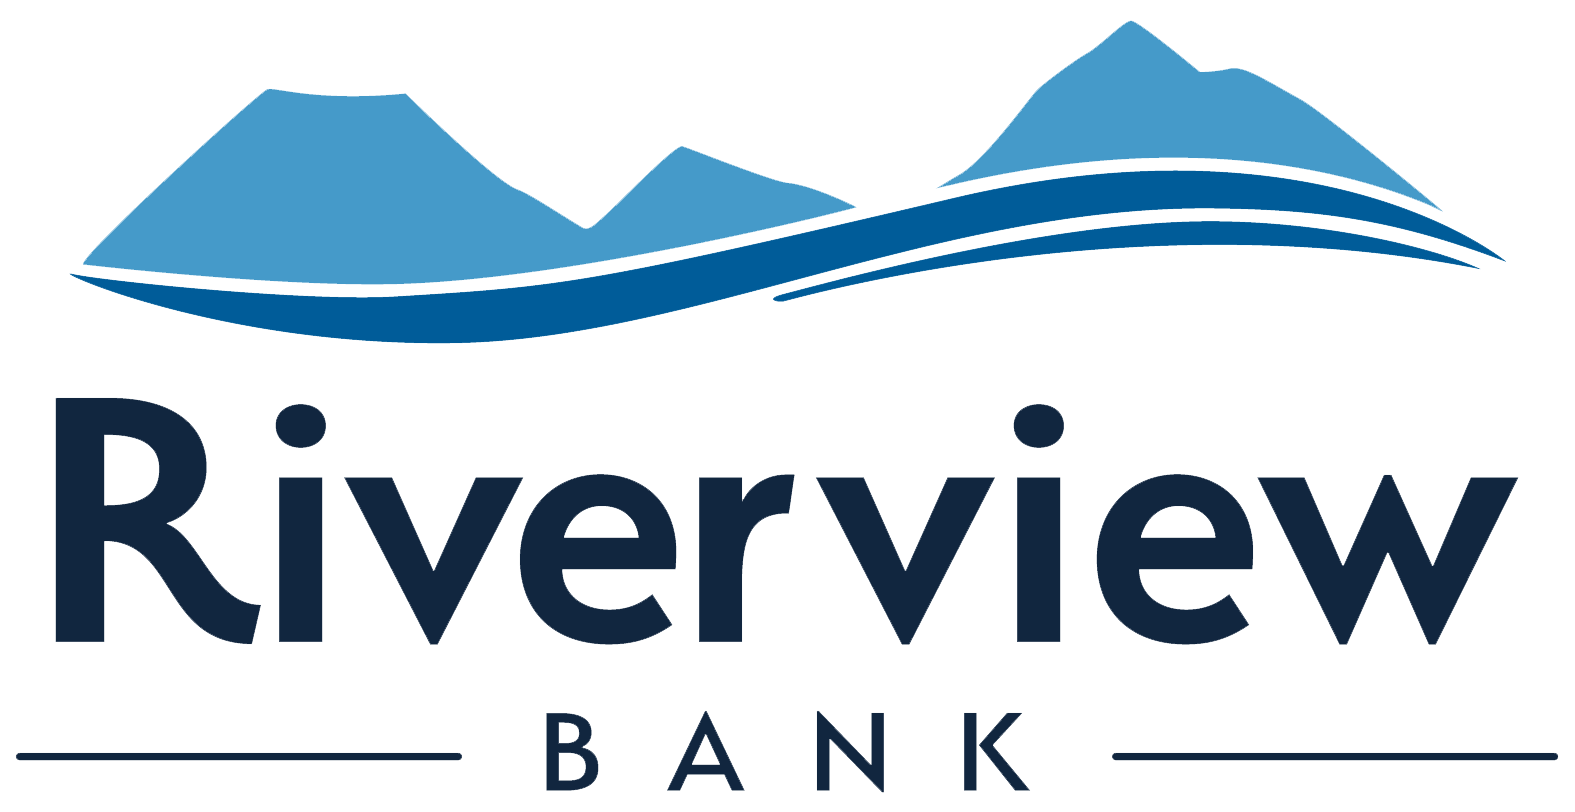 RiverviewBank